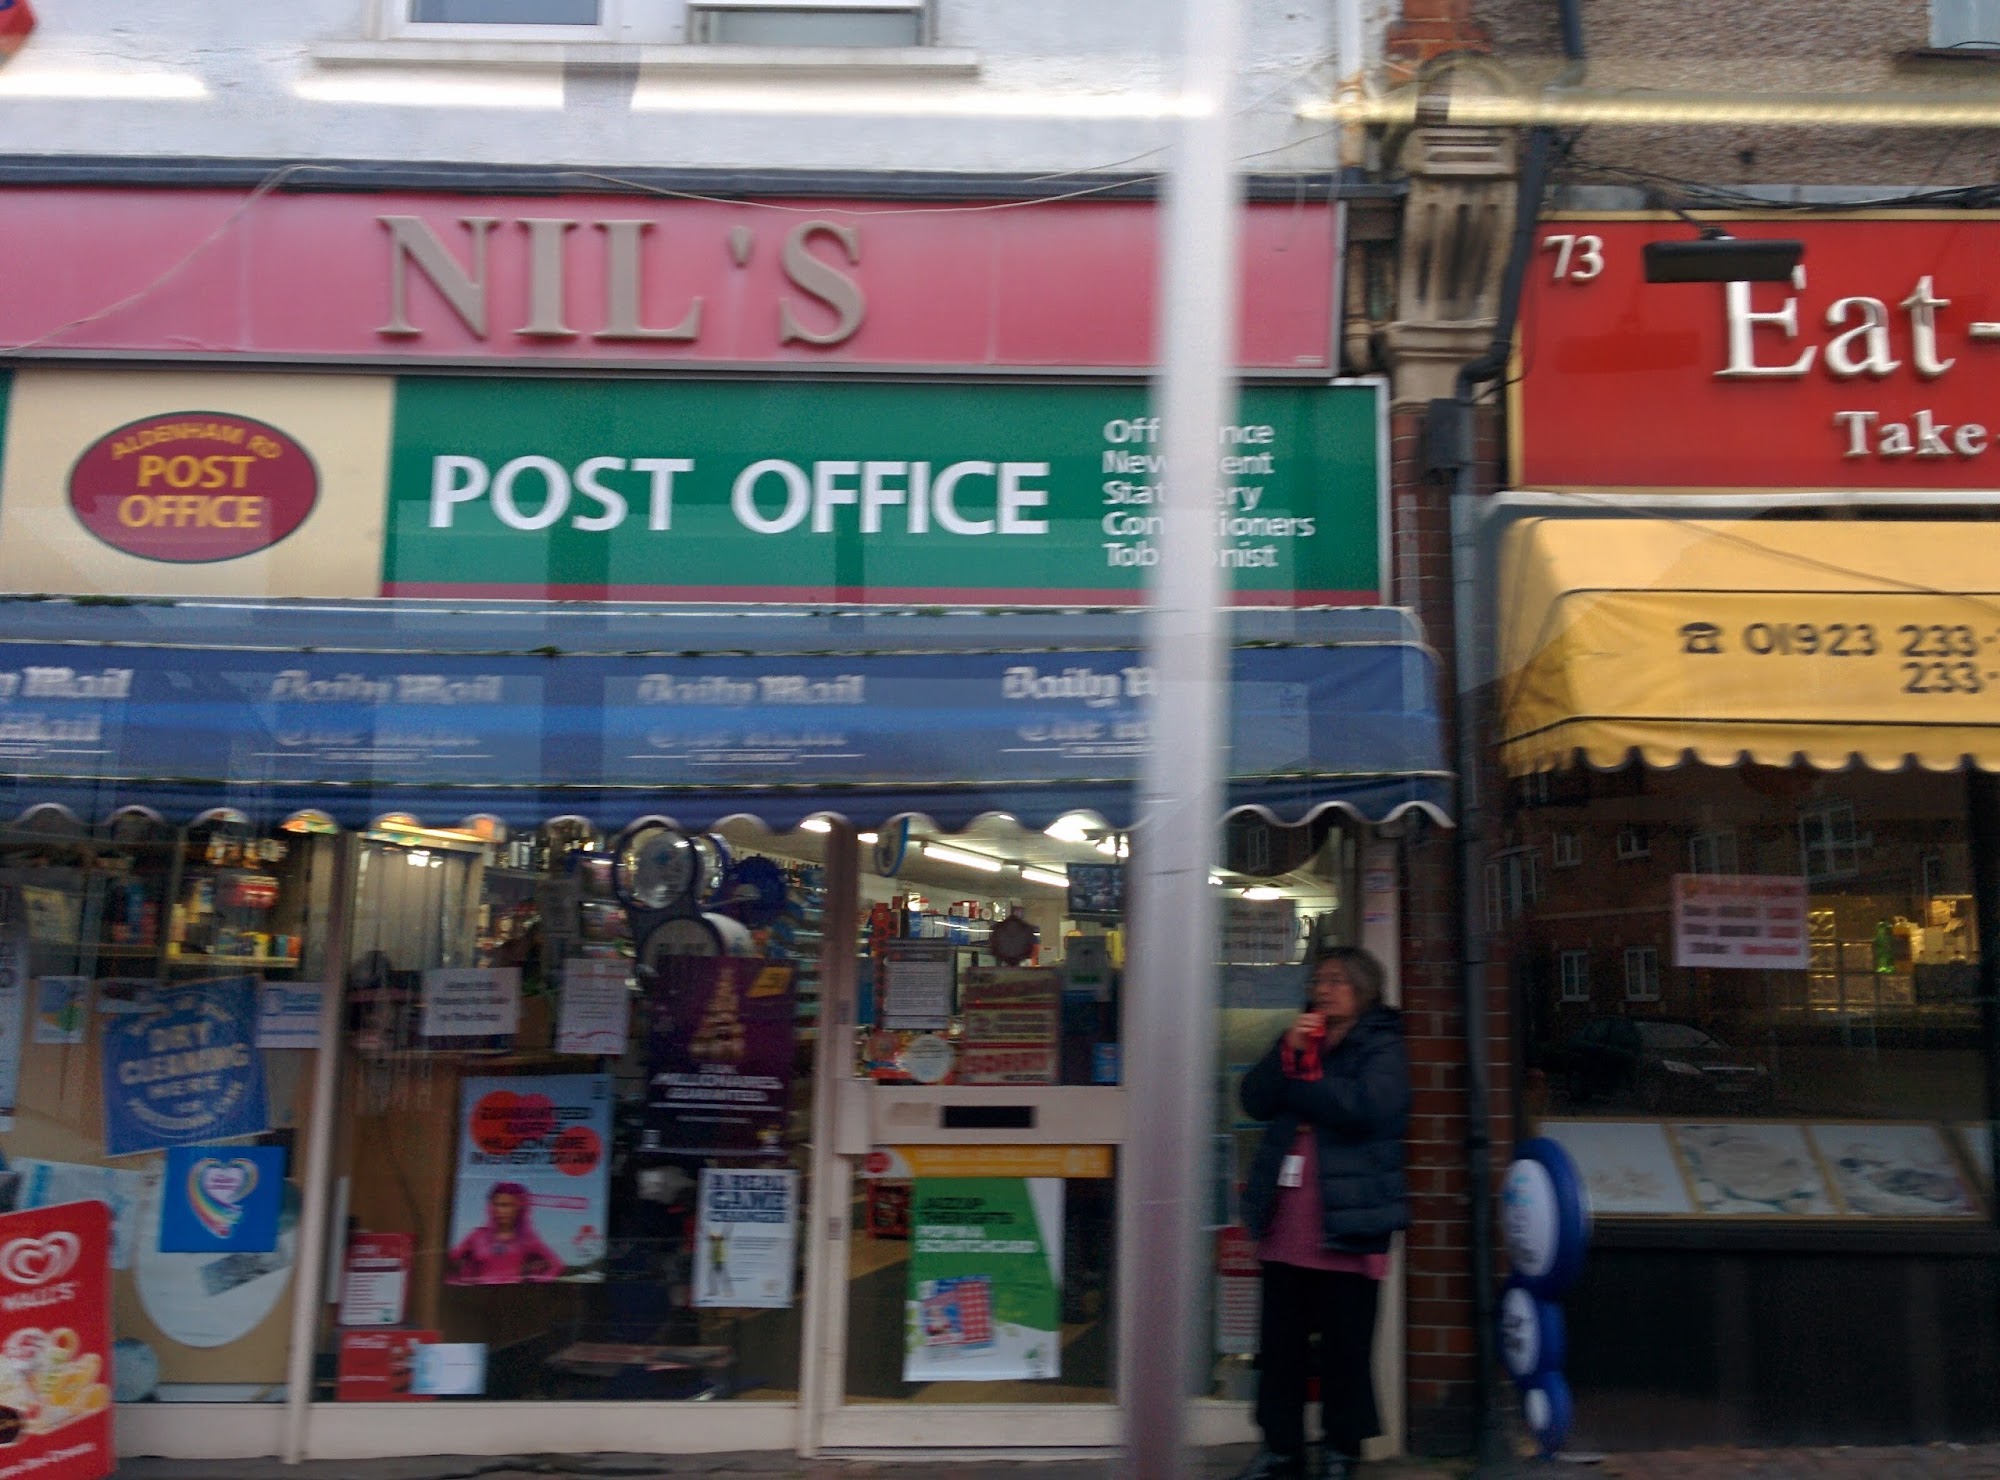 Aldenham Road Post Office